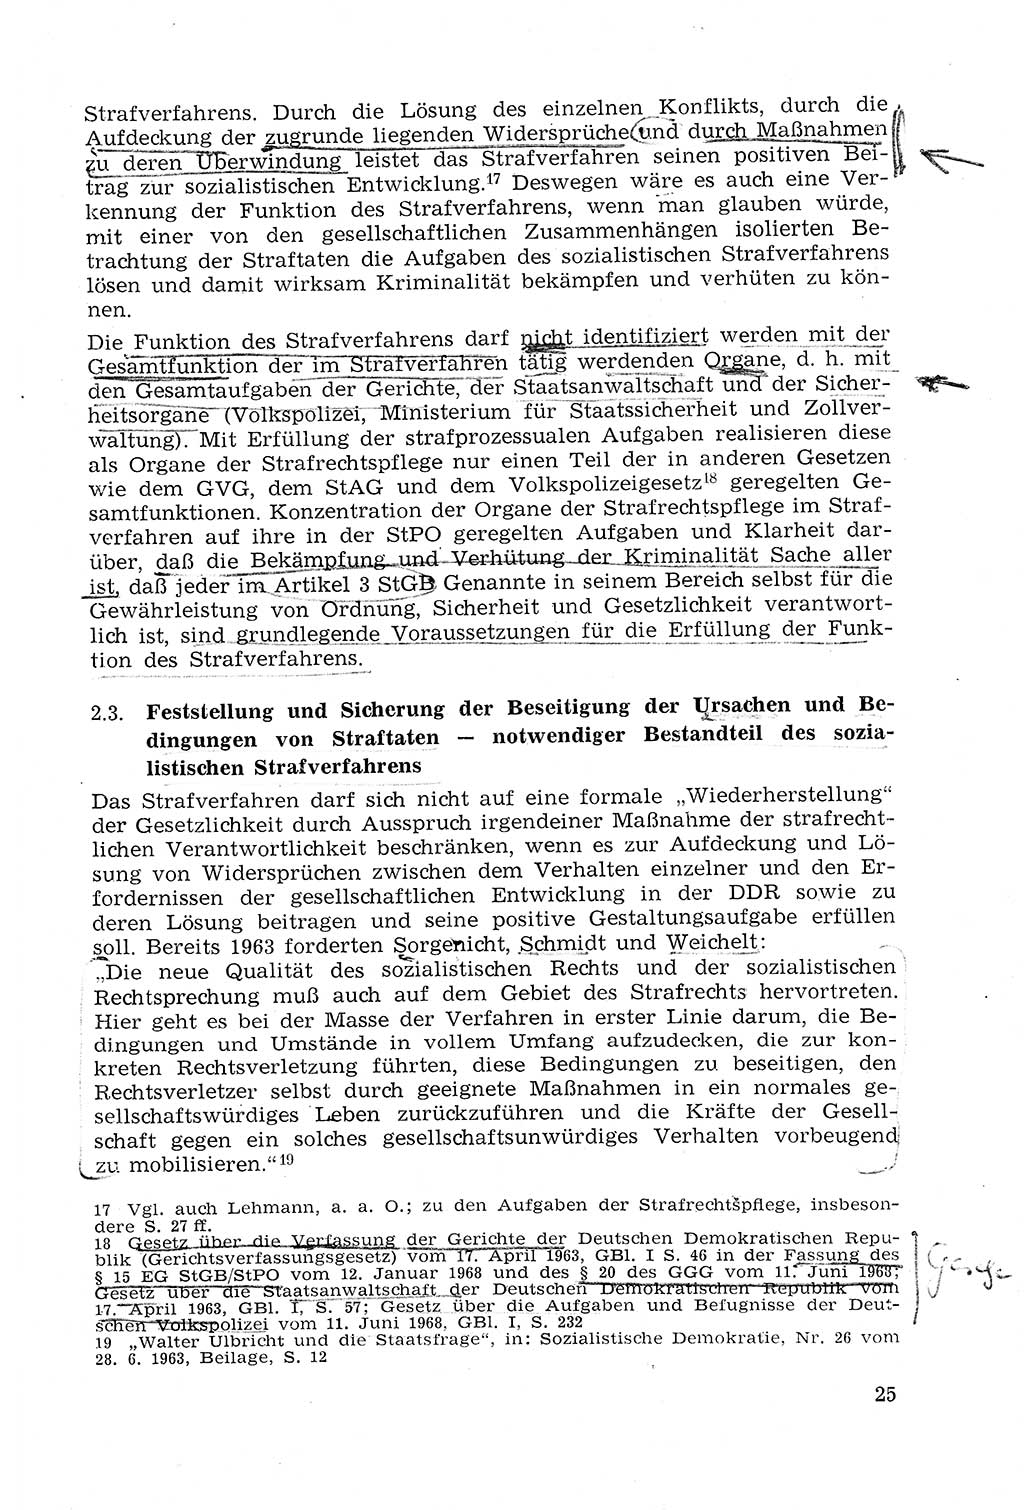 Strafprozeßrecht der DDR (Deutsche Demokratische Republik), Lehrmaterial 1969, Seite 25 (Strafprozeßr. DDR Lehrmat. 1969, S. 25)